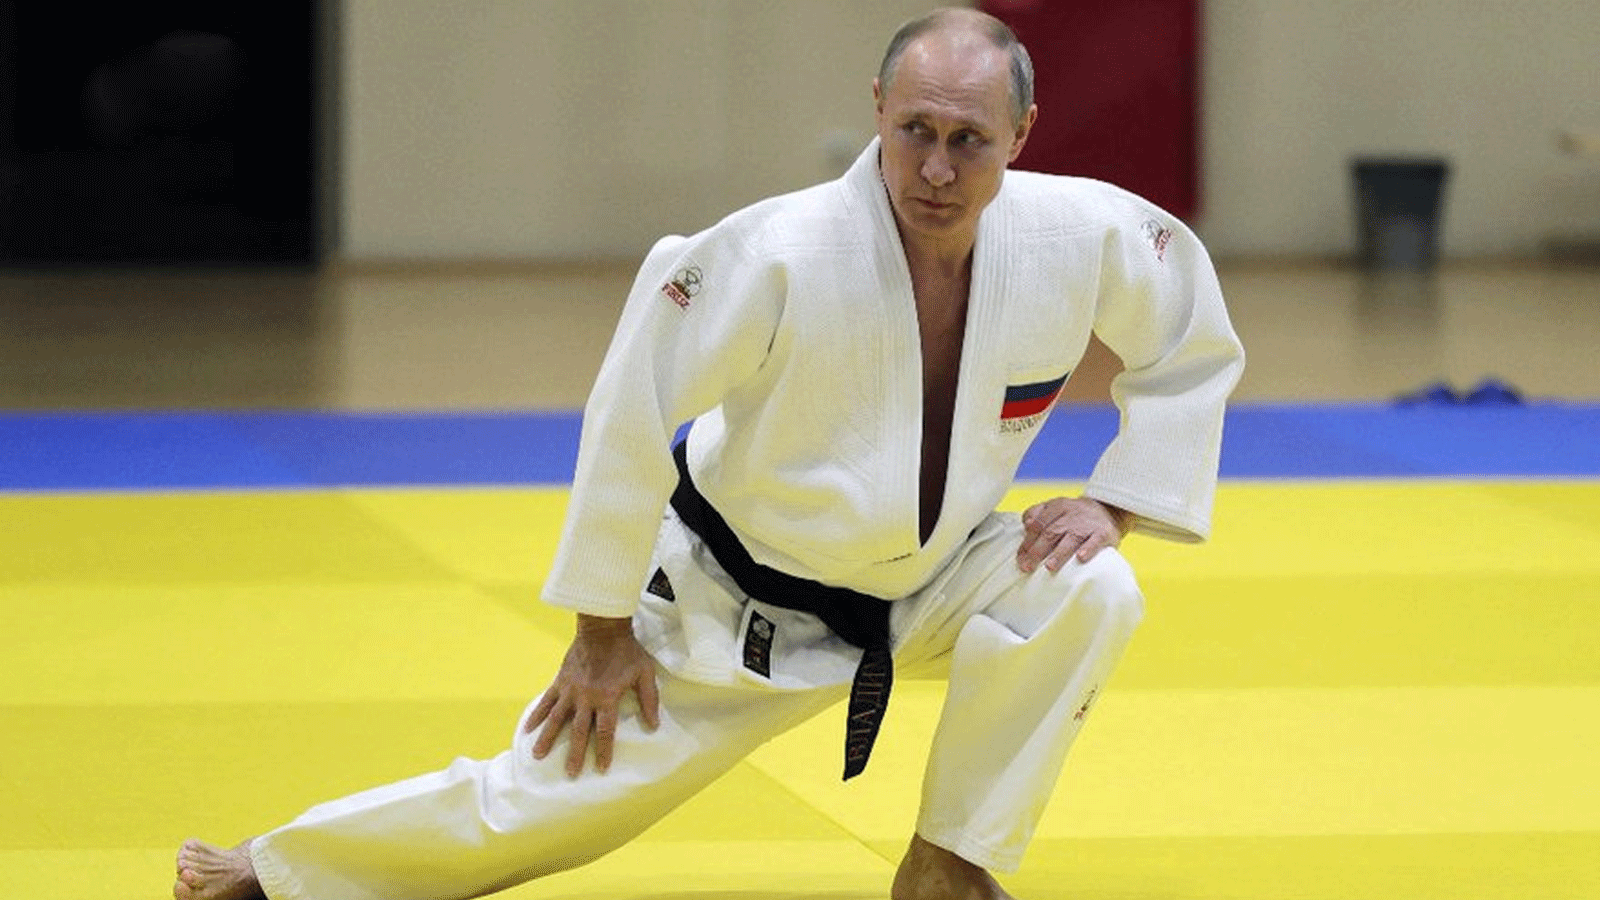  إيقاف الرئيس الروسي فلاديمير بوتين من منصبه كرئيس فخري لاتحاد الجودو الدولي (IJF) بسبب غزو روسيا لأوكرانيا